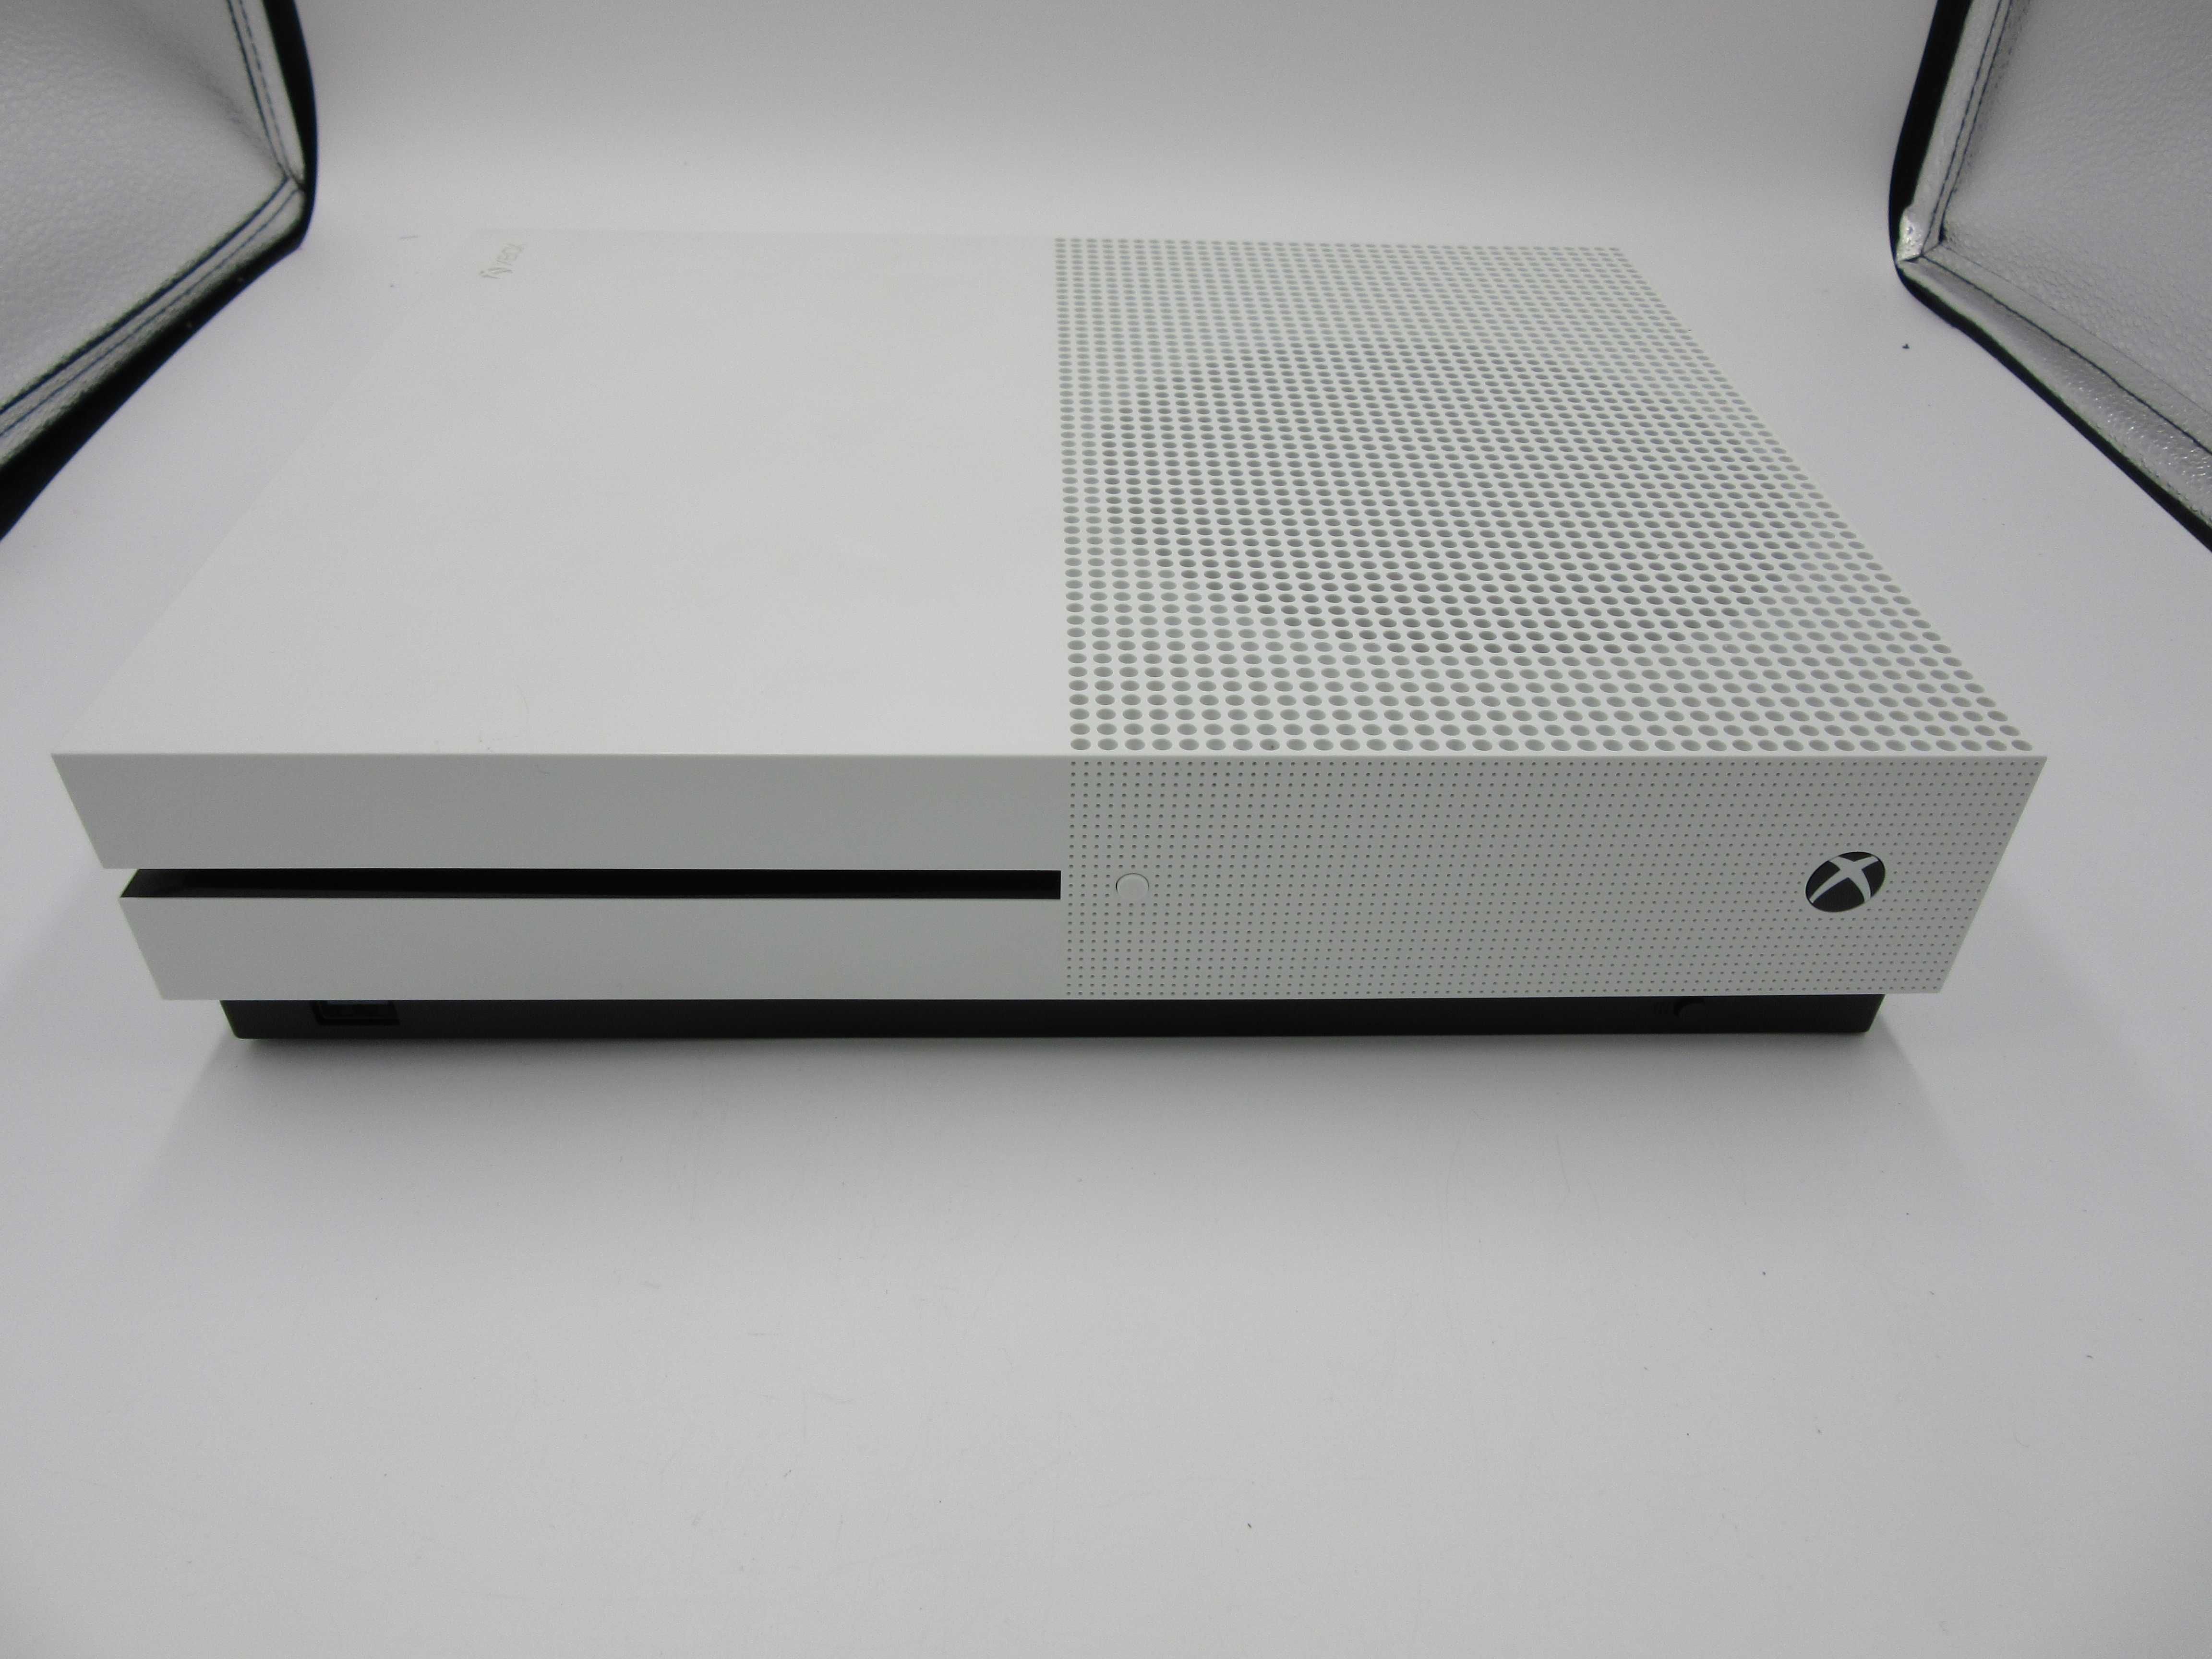 Konsola Xbox One S 500 GB oryginalny pad 12 msc gwarancji